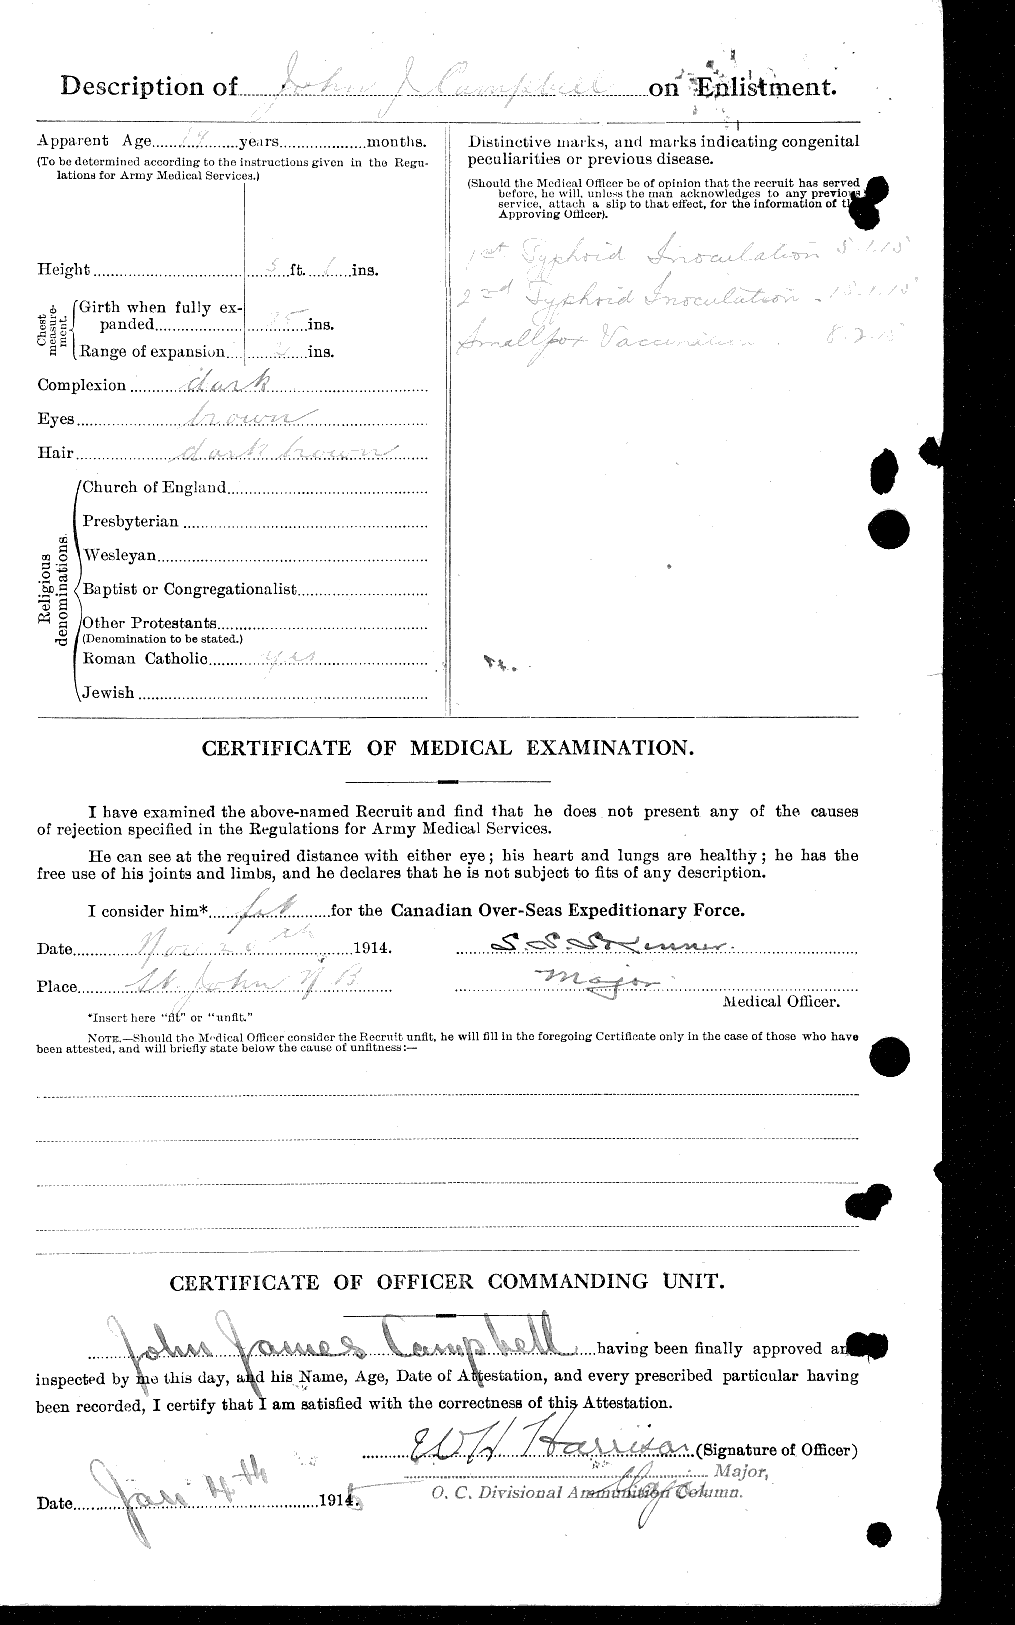 Dossiers du Personnel de la Première Guerre mondiale - CEC 008541b